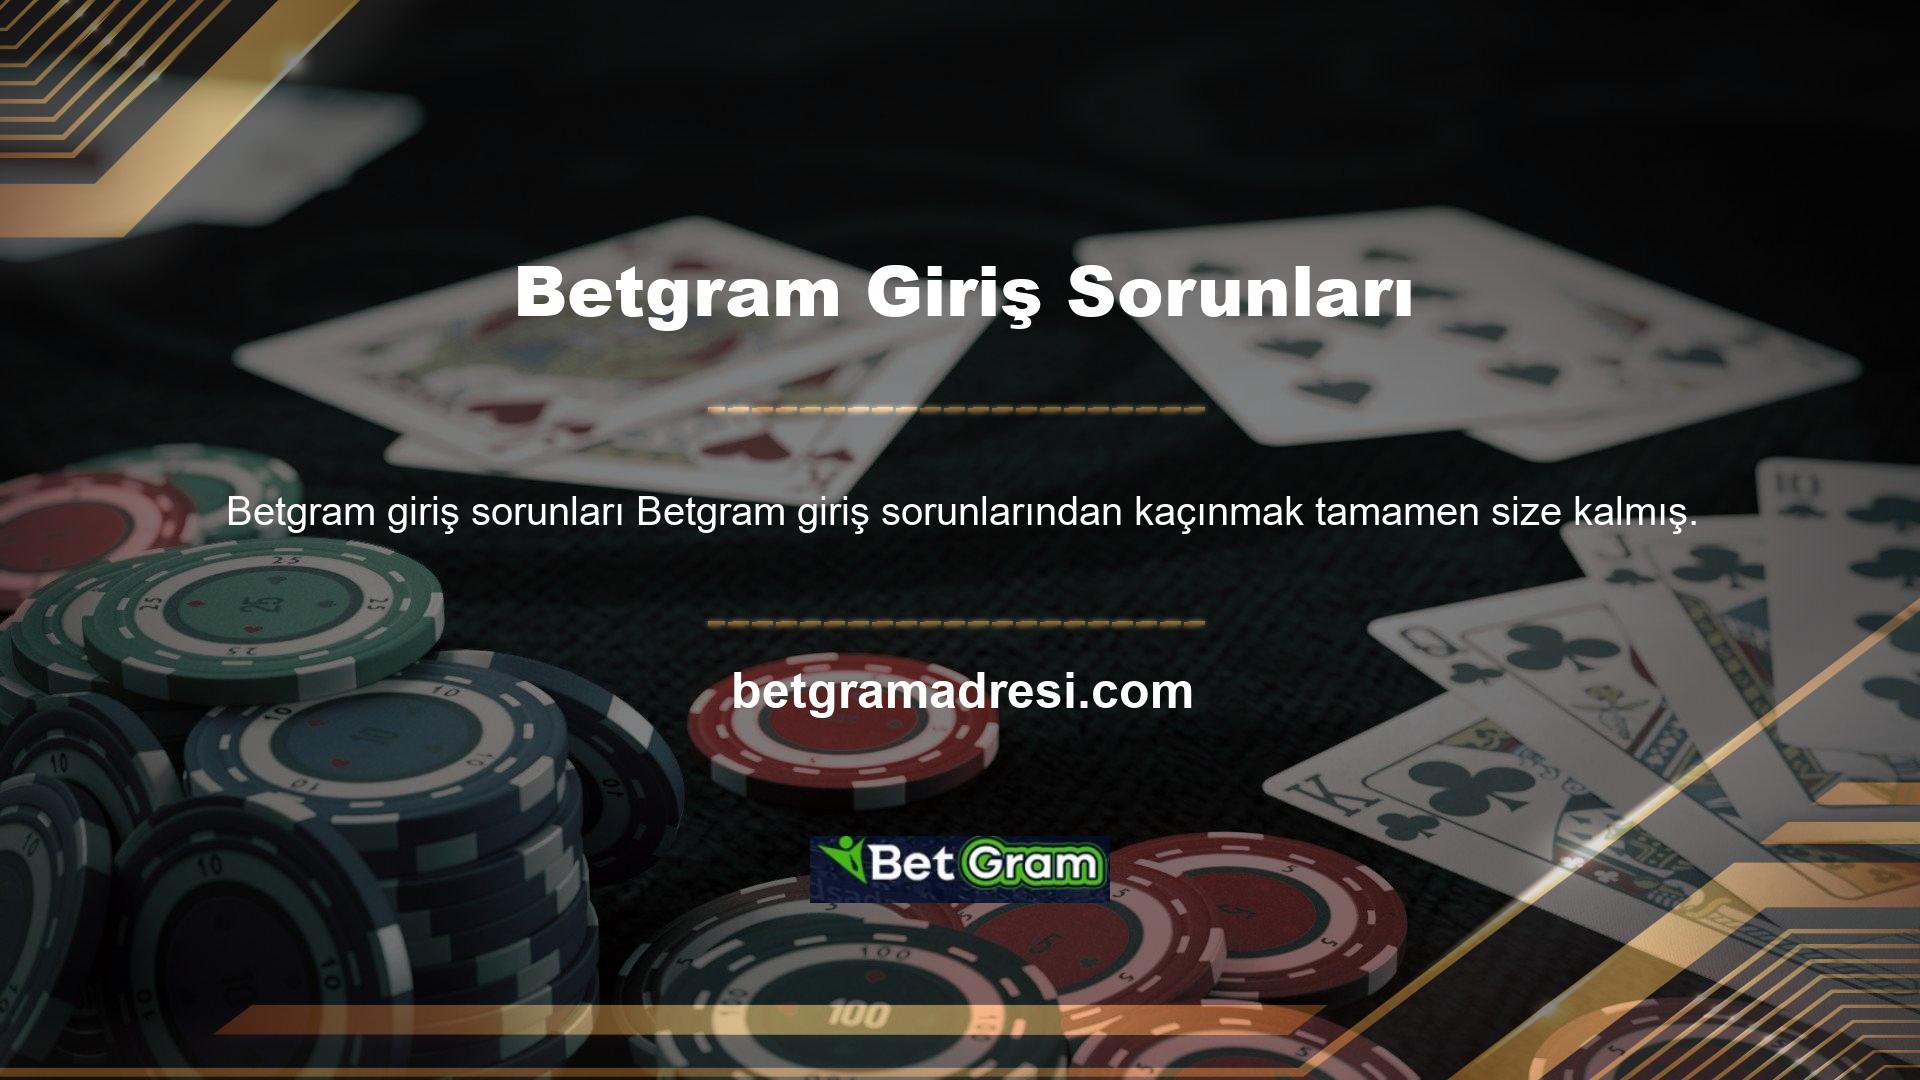 Giriş sorunları yaşayan Betgram casino sitesi, hizmet kesildiğinde yeni bir Jetspeed alan adına geçerek sitenin bir an bile kullanıcılarına yakın kalmasını sağlıyor